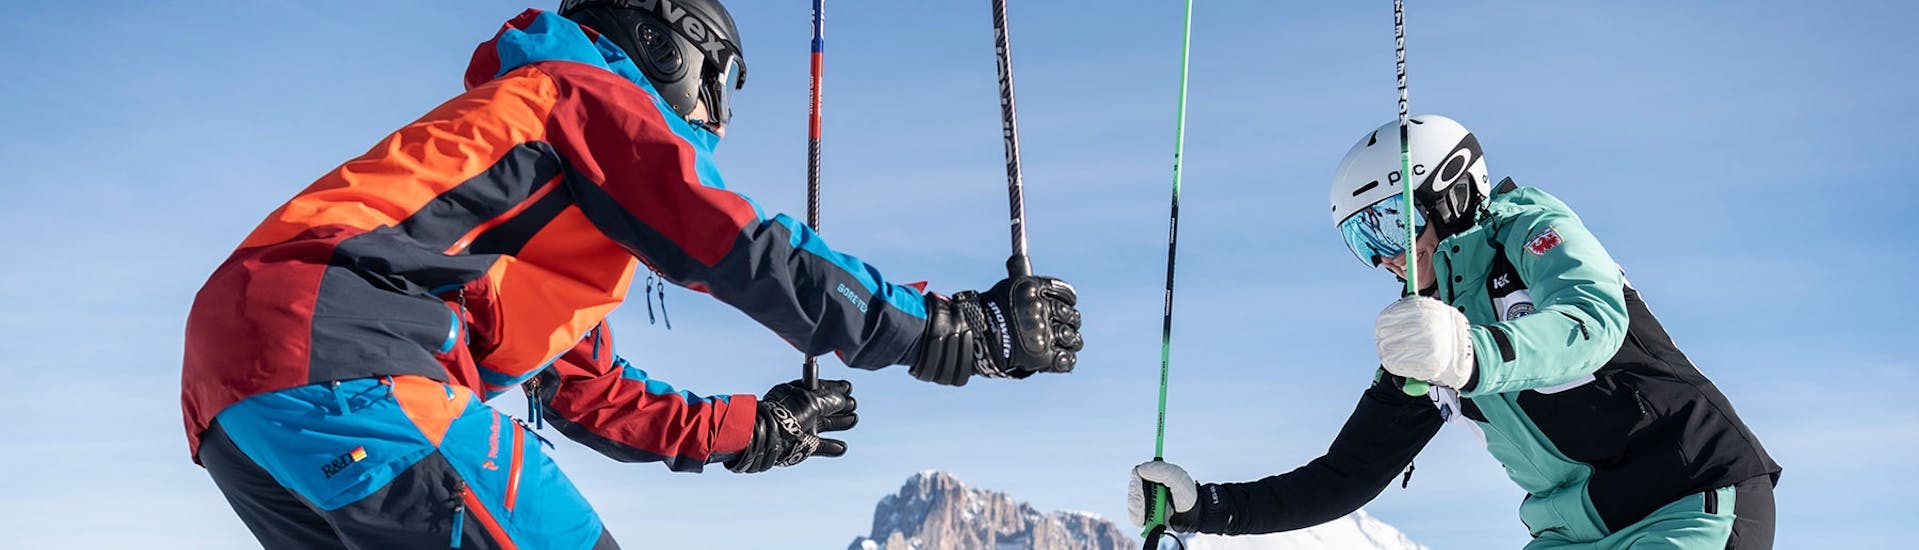 Twee skiërs houden hun stokken omhoog tijdens de privé skilessen voor volwassenen van alle niveaus met skischool Schlern 3000.